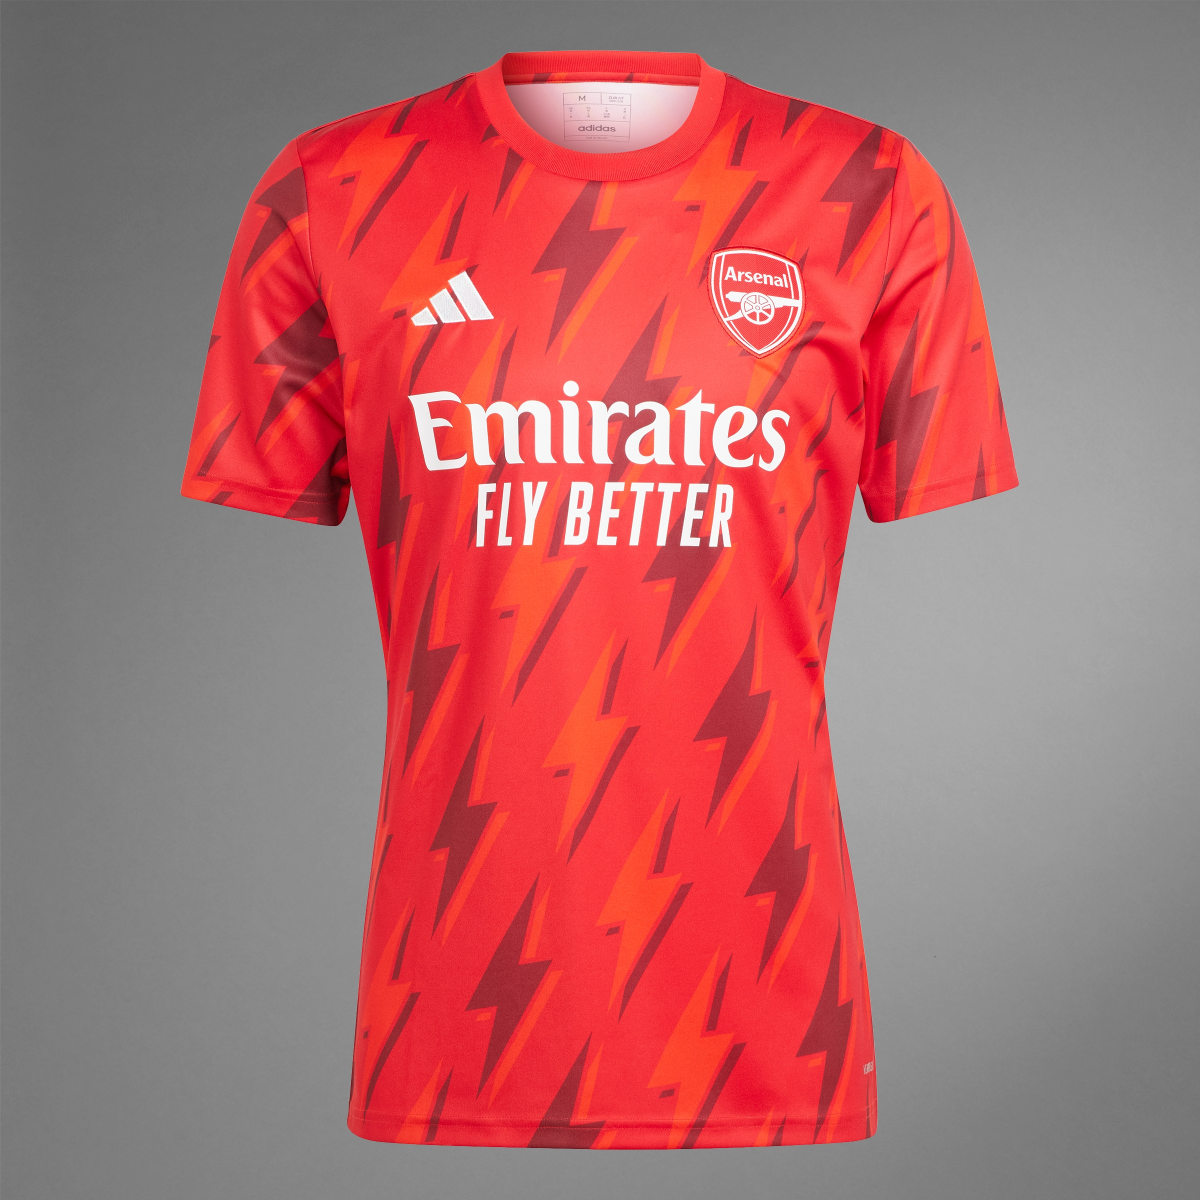 Adidas Camisola de Aquecimento do Arsenal. 10